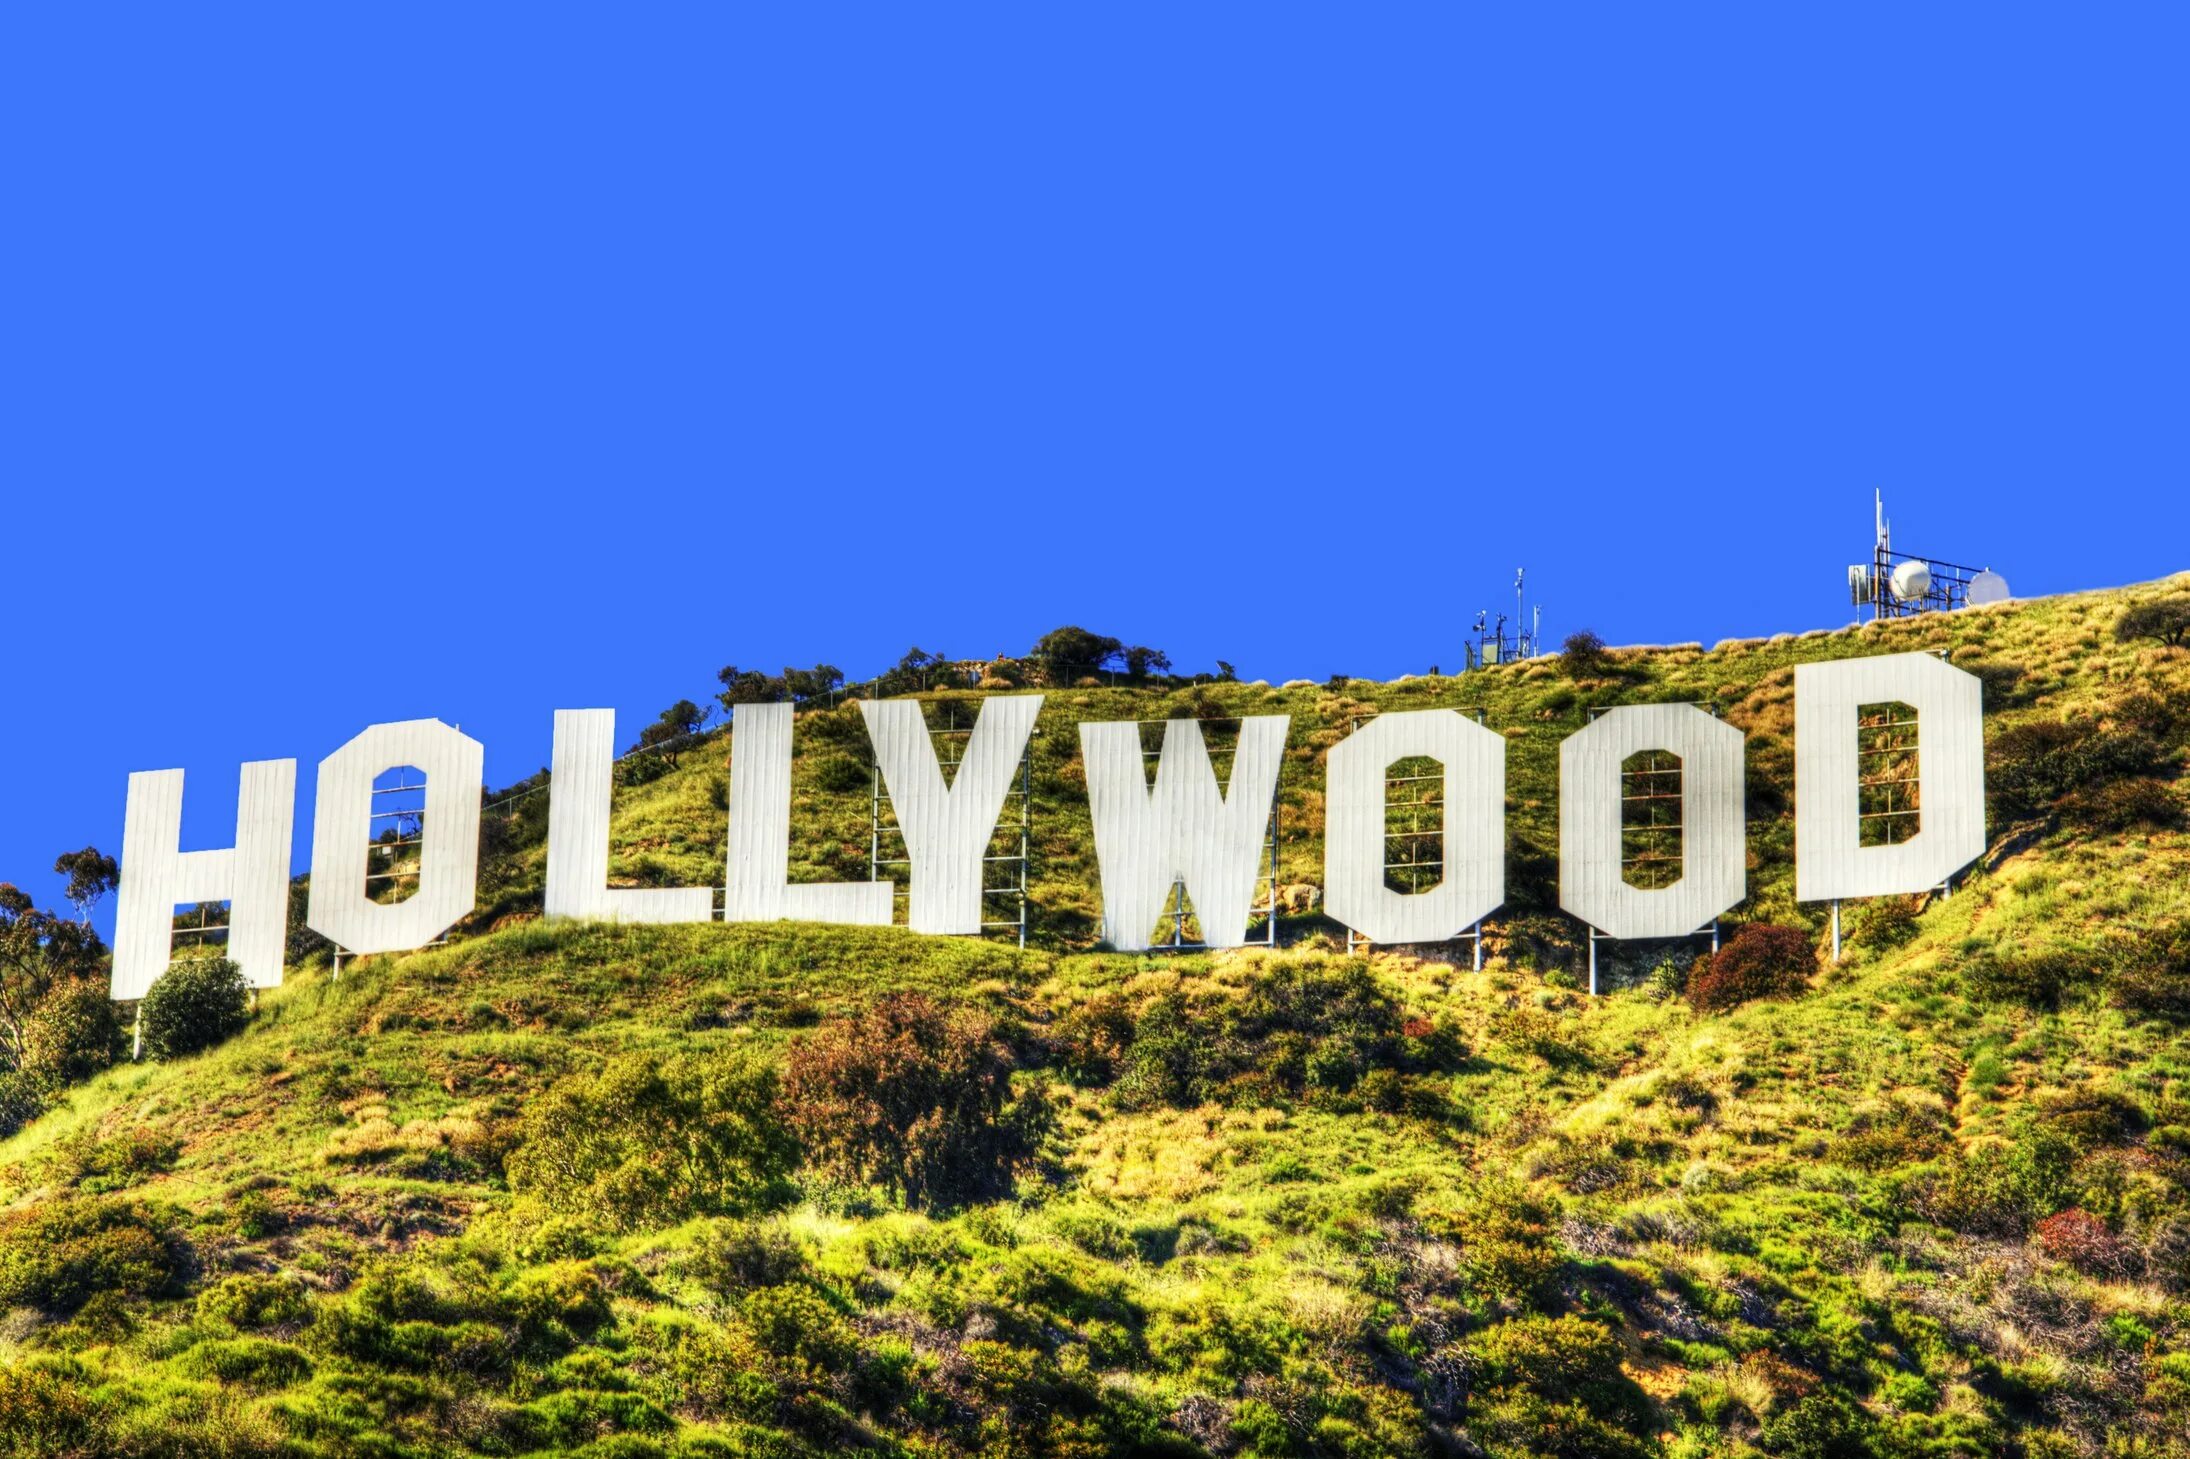 Галивуд. Лос Анджелес надпись Голливуд. Лос-Анджелес Калифорния Голливуд. Лос Анджелес достопримечательности знак Голливуд. Лос Анджелес надпись на горе.